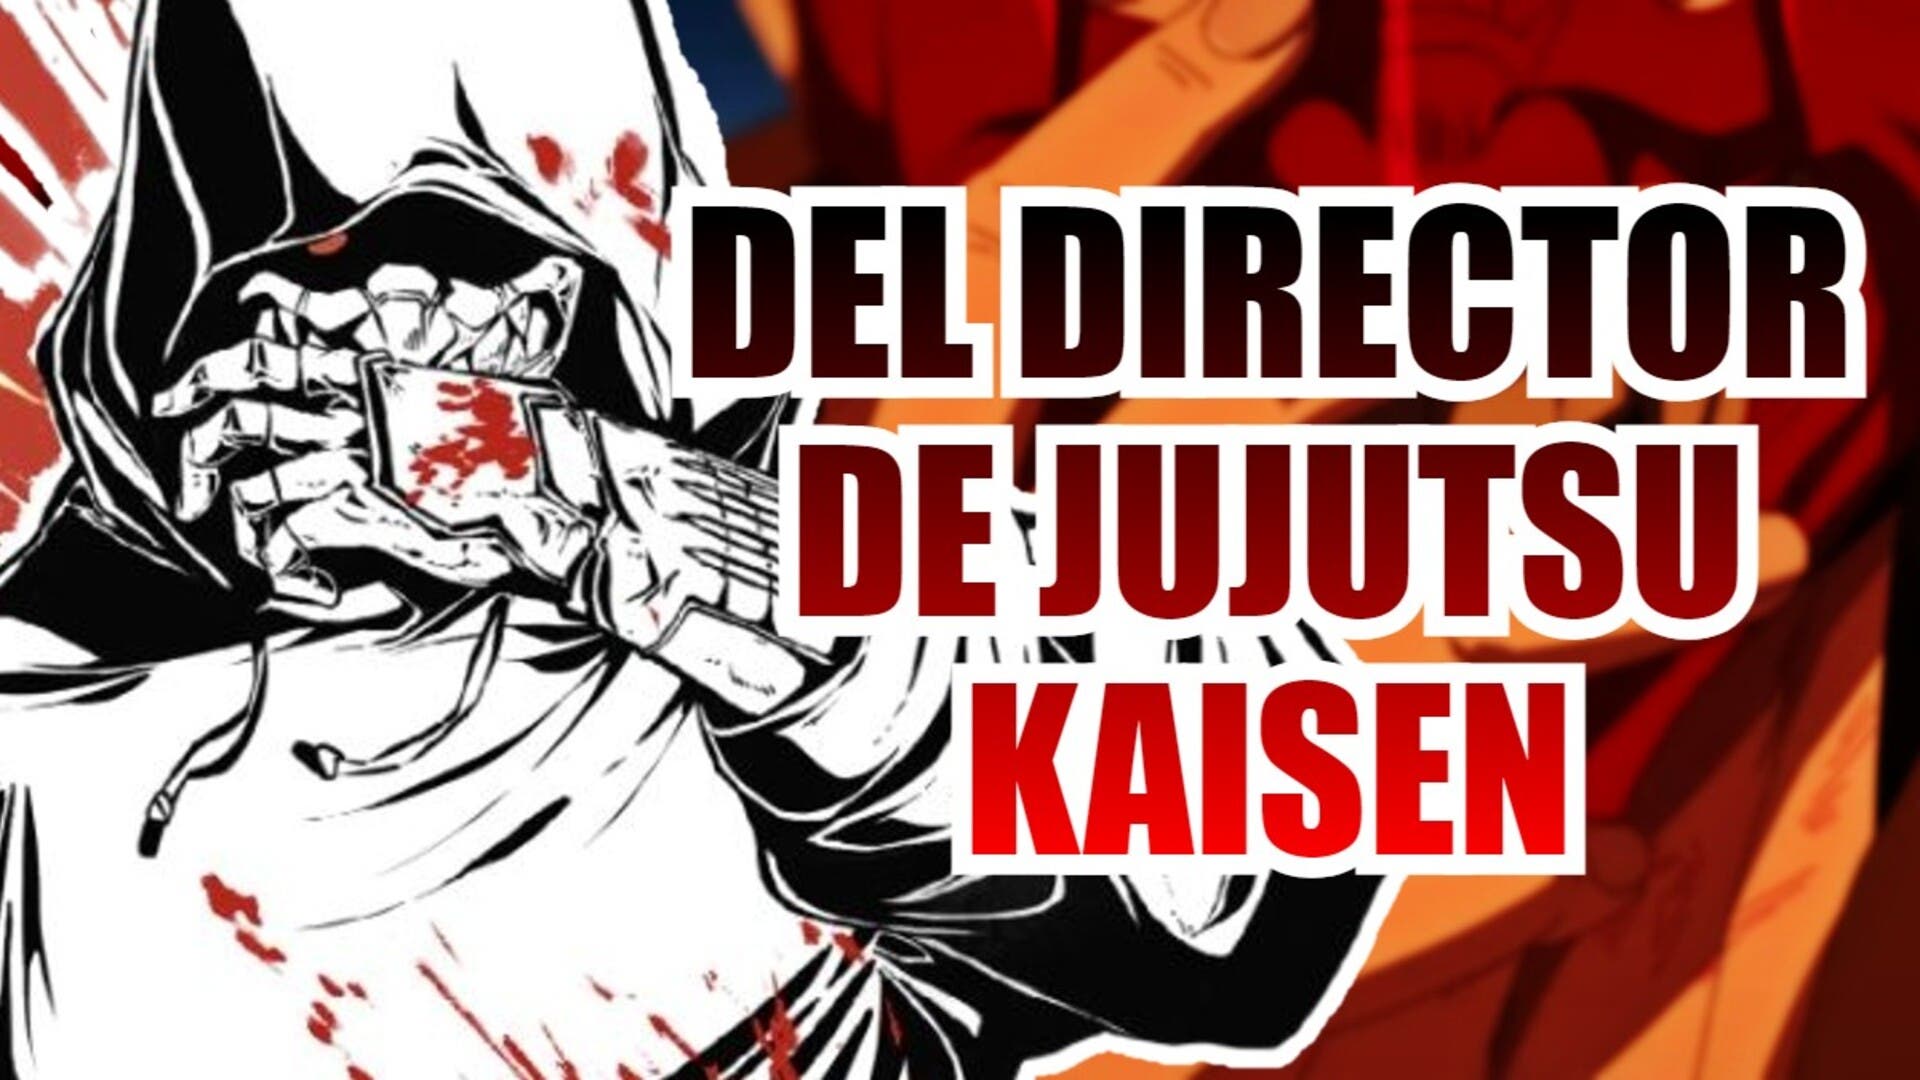 Ninja Kamui trailer Anime em produção 